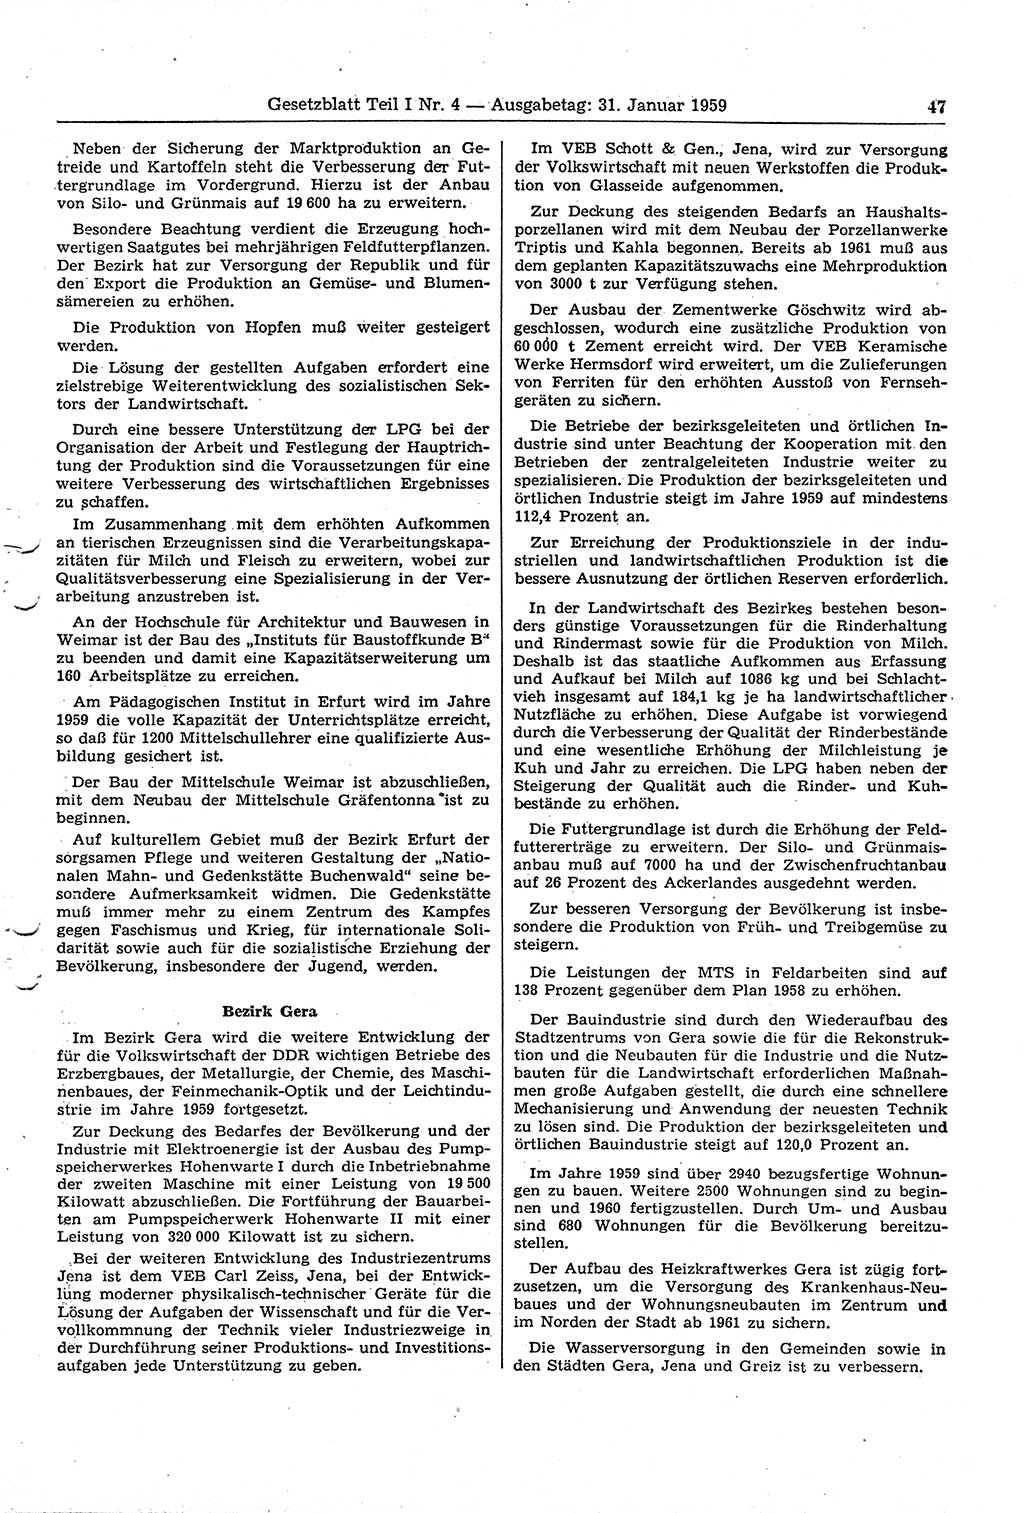 Gesetzblatt (GBl.) der Deutschen Demokratischen Republik (DDR) Teil Ⅰ 1959, Seite 47 (GBl. DDR Ⅰ 1959, S. 47)